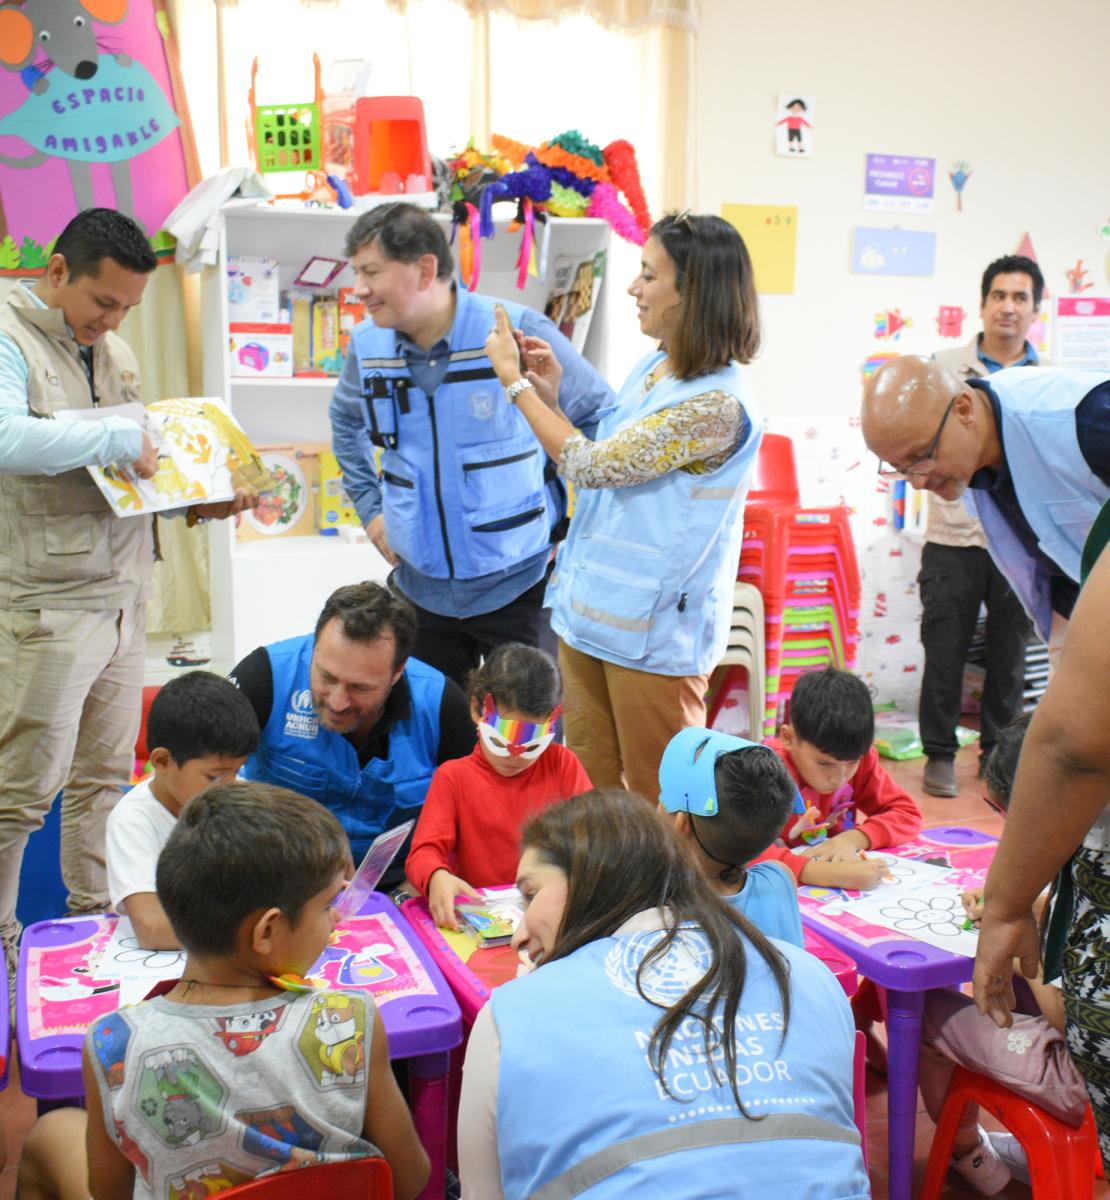 Члены делегации из штаб-квартиры ООН, ООН Перу и ООН Эквадор посещают безопасное пространство для детей и подростков в пункте по уходу и ориентации для мигрантов и беженцев недалеко от границы Перу и Эквадора.